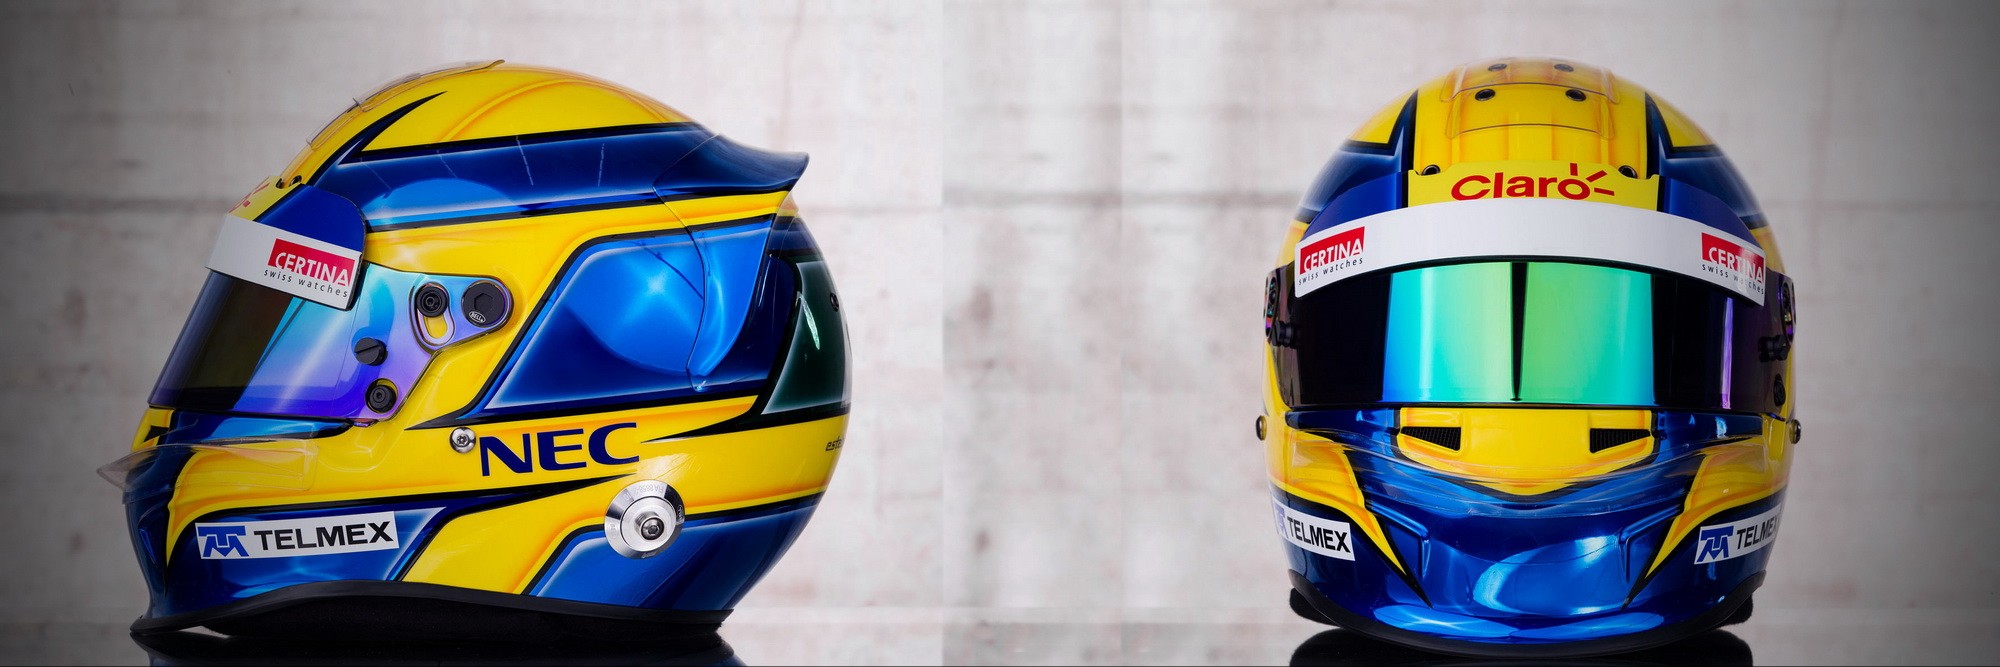 Шлем Эстебана Гутьерреса на сезон 2013 года | 2013 helmet of Esteban Gutierrez